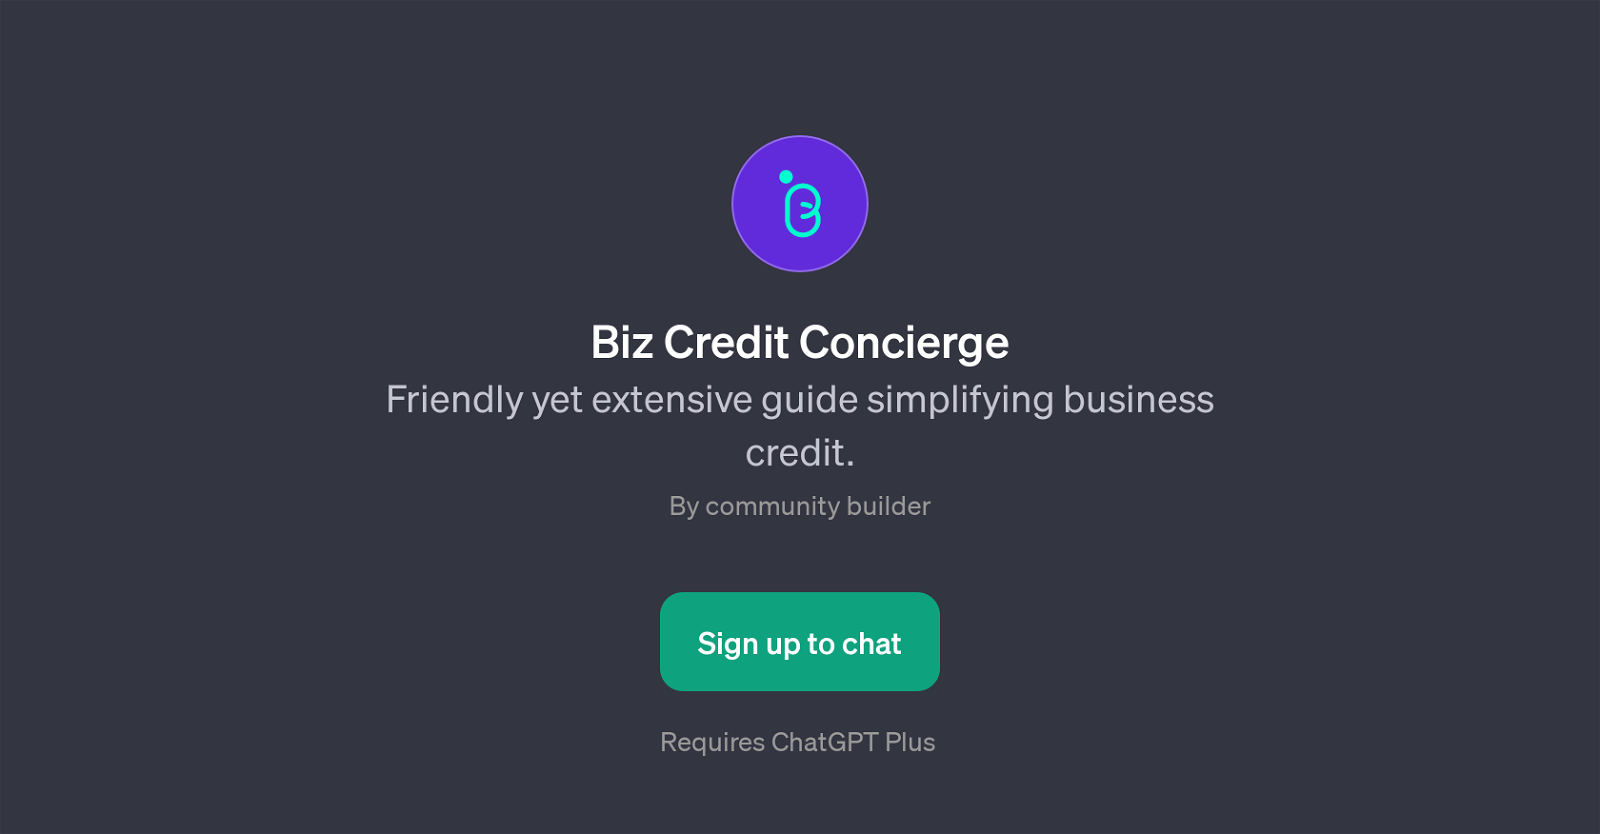 Biz Credit Concierge website